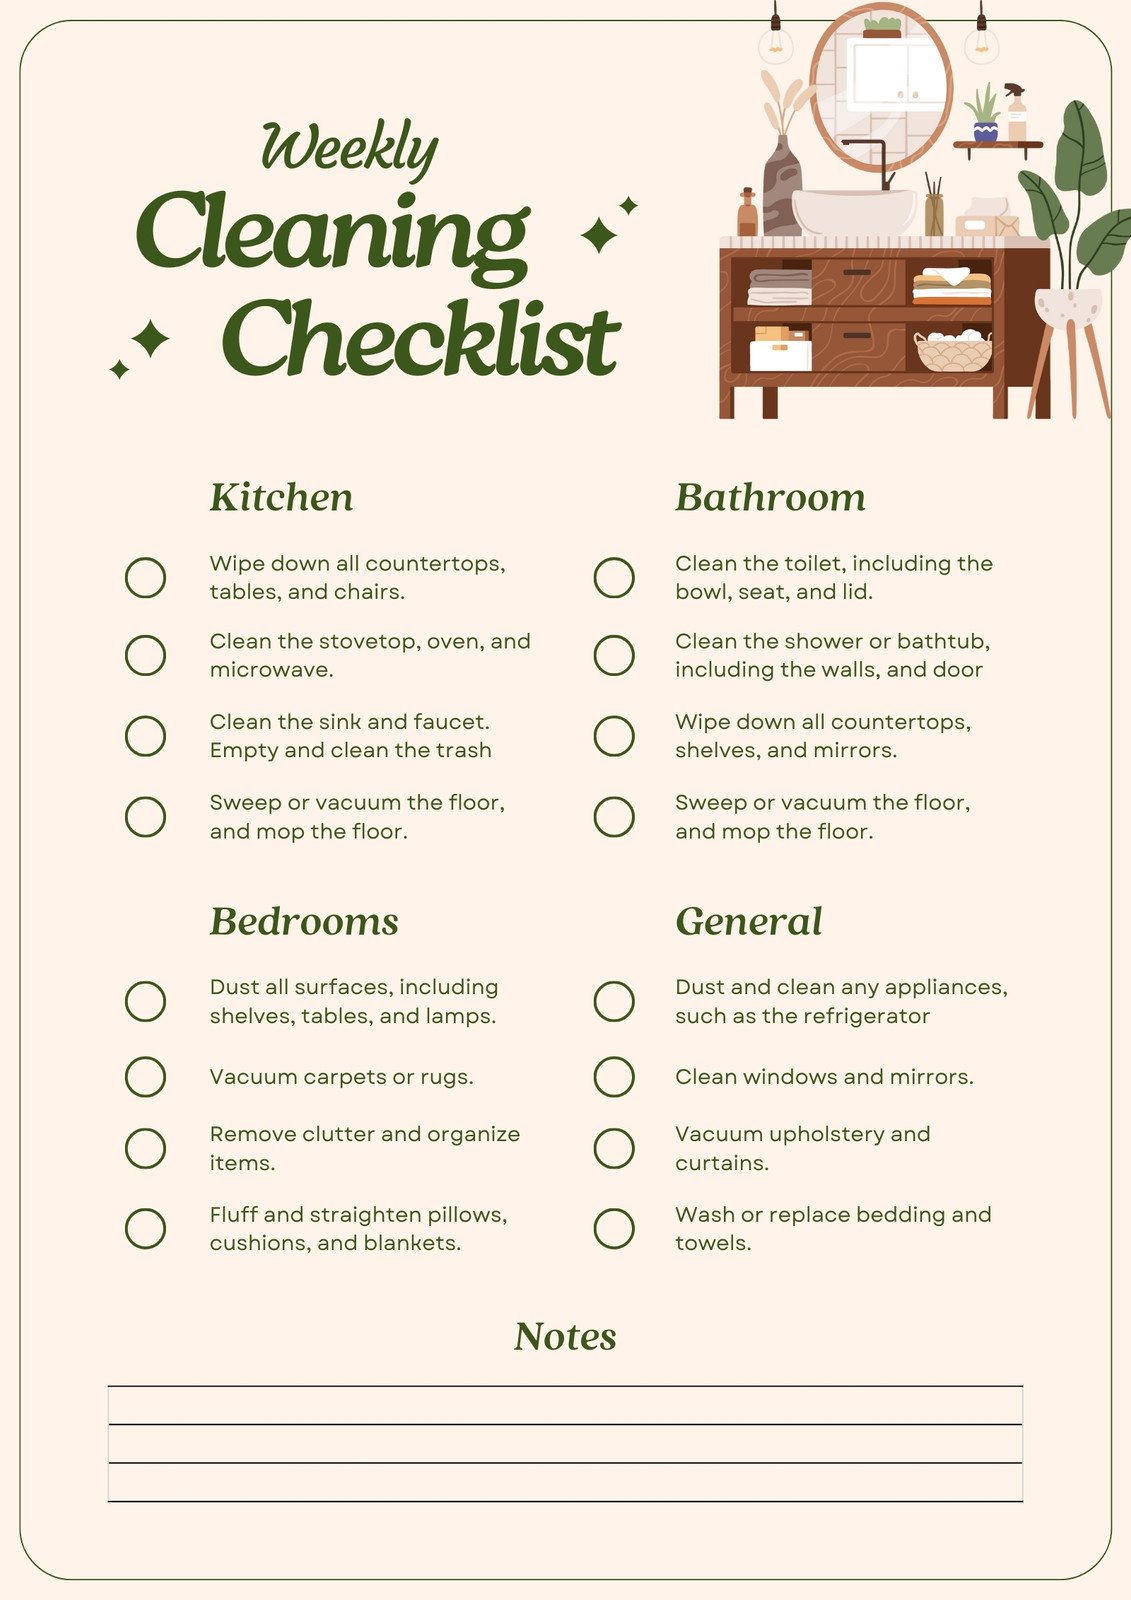 Weekly Kitchen Cleaning Checklist